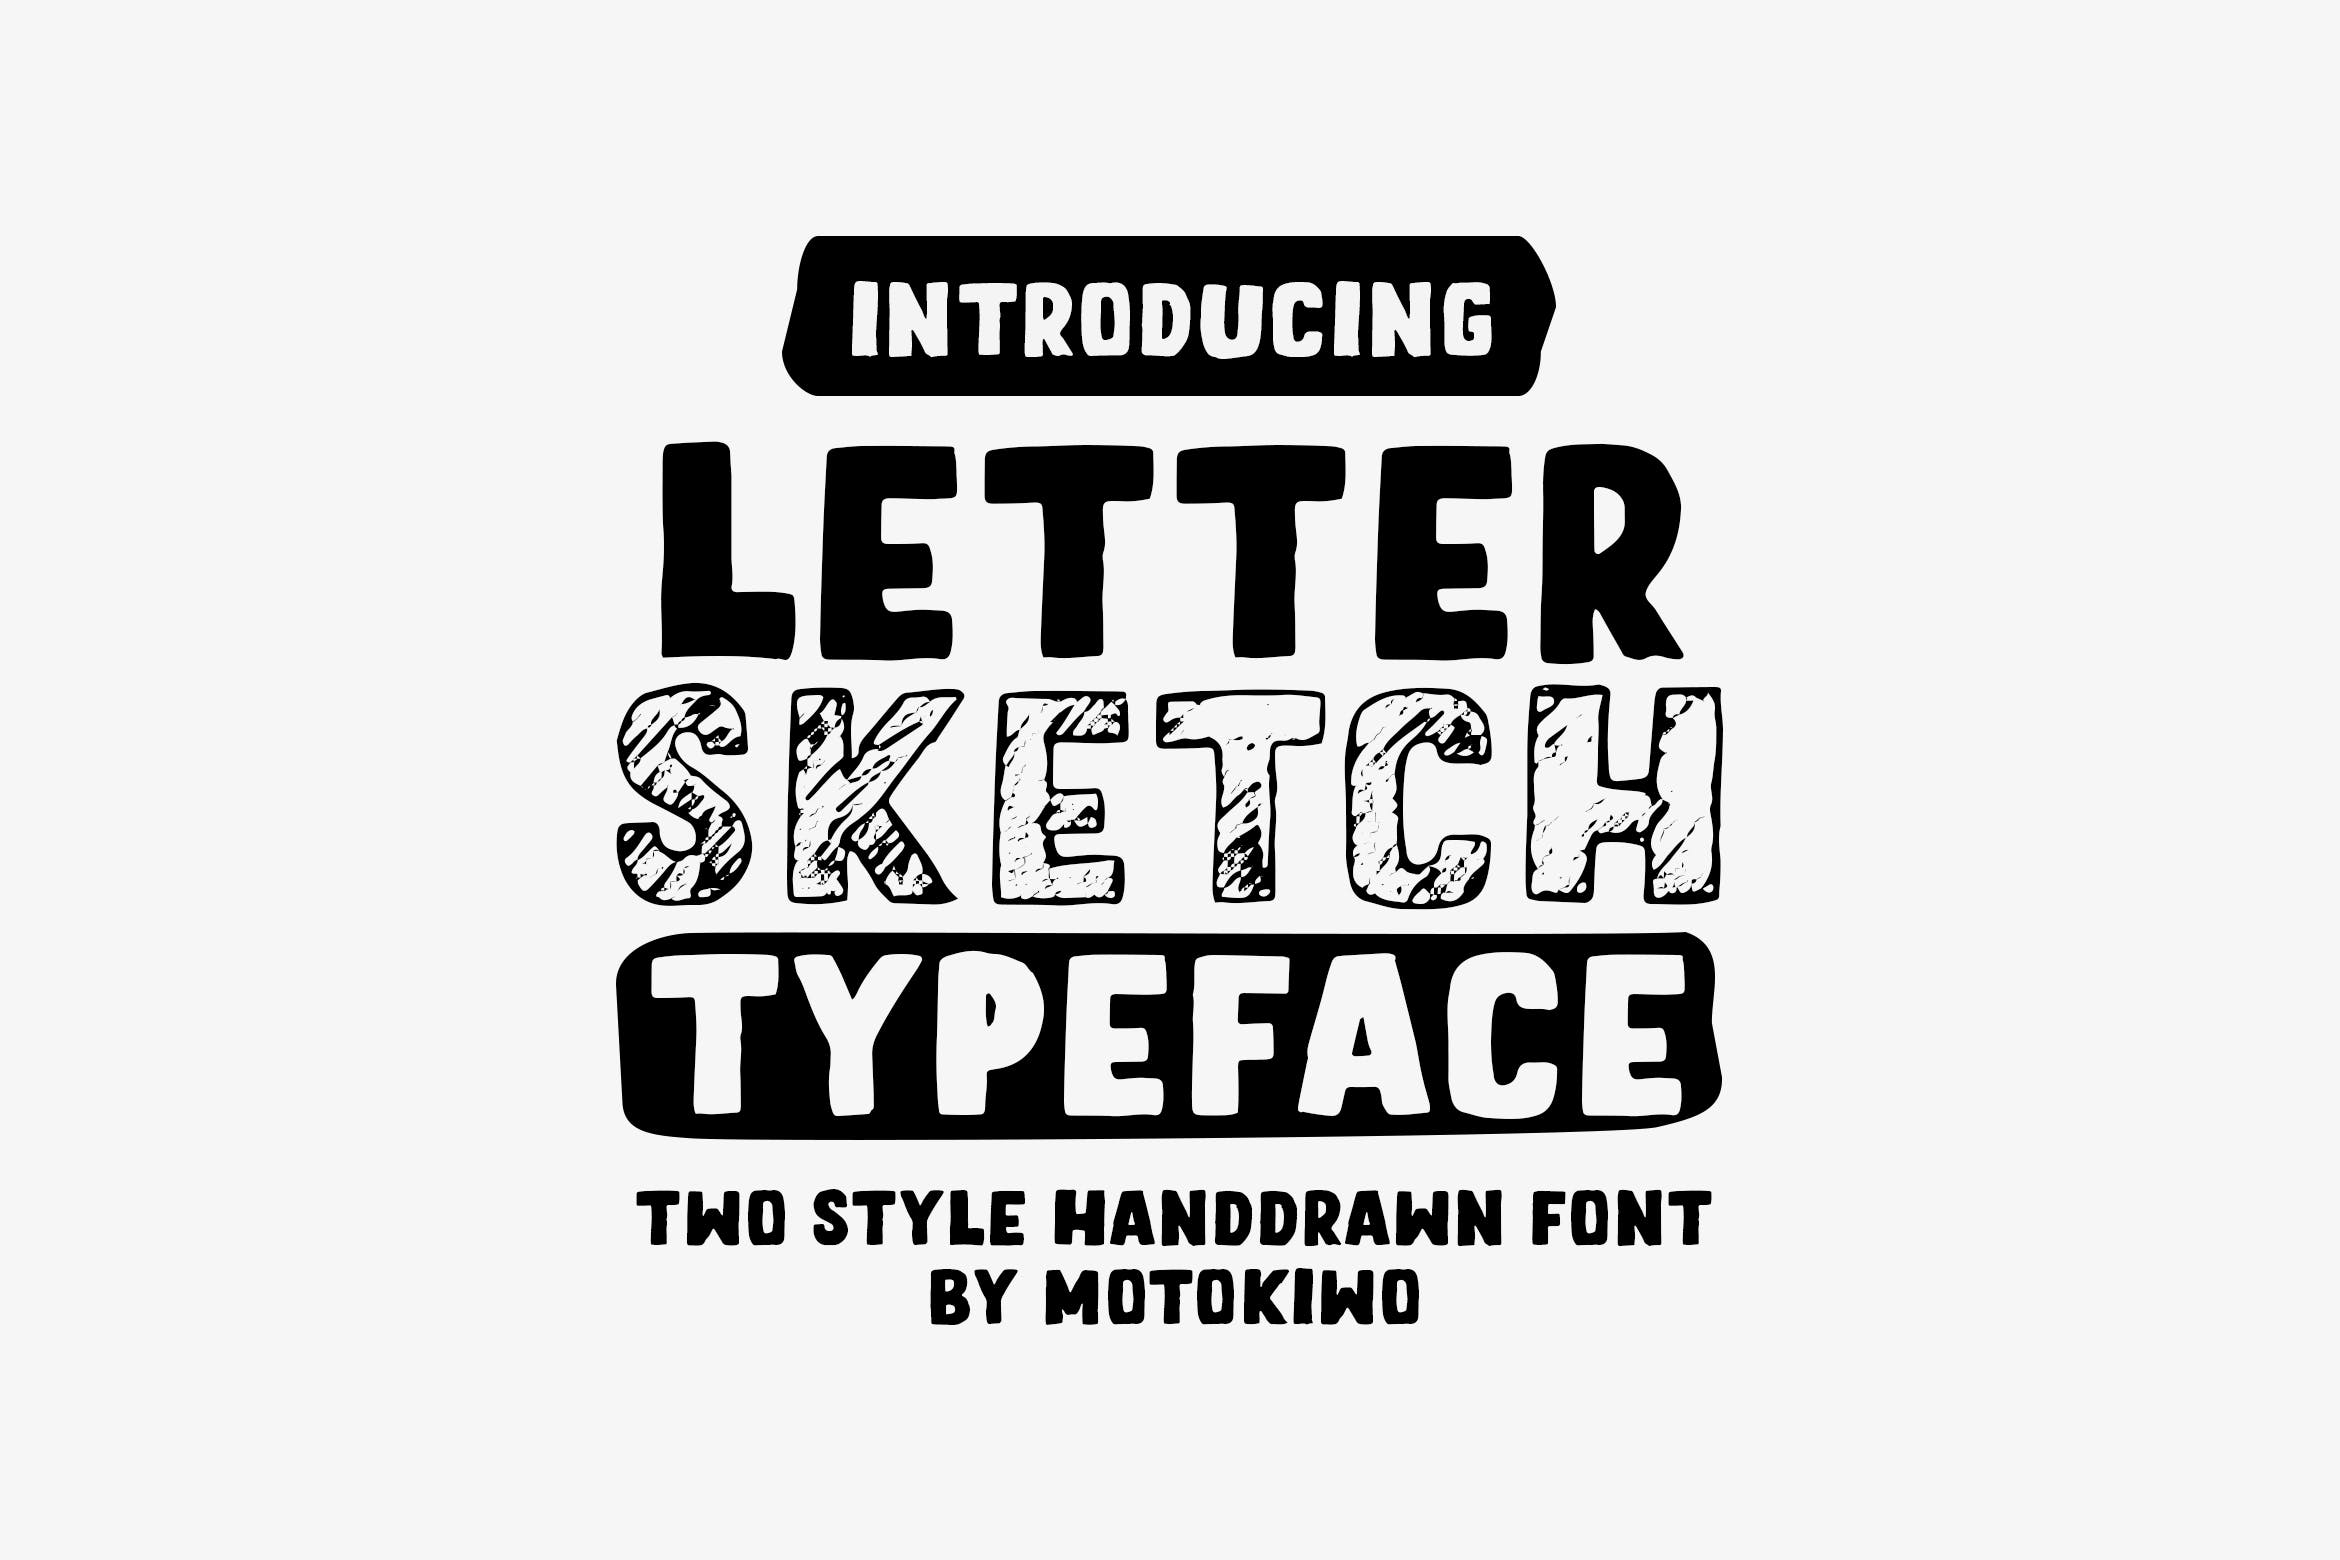 铅笔素描风格＆实心填充英文无衬线字体非凡图库精选 Letter Sketch Typeface插图